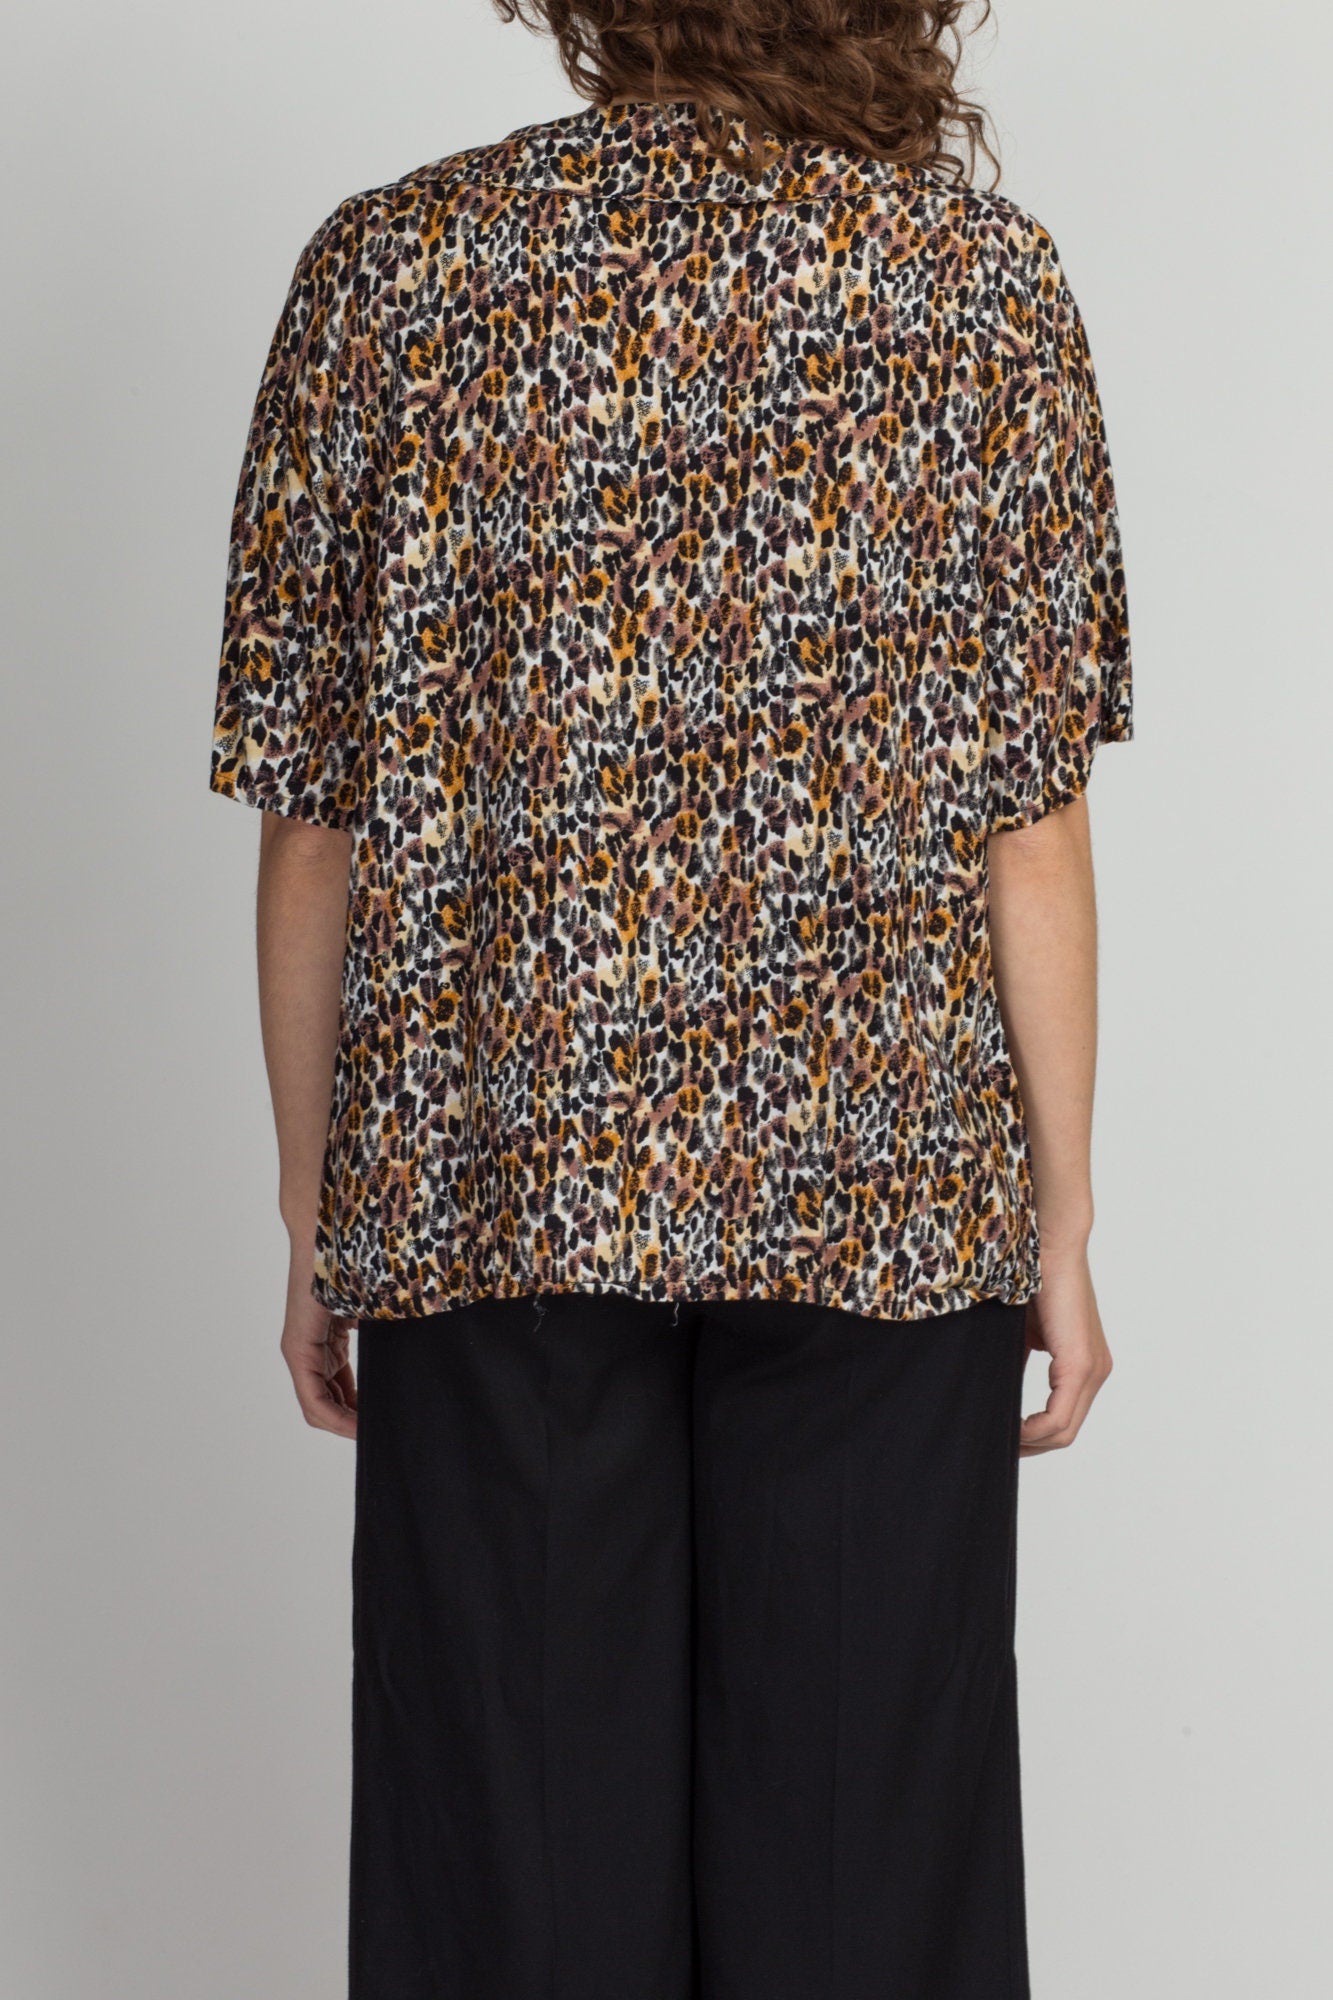 80s Leopard Print Peter Pan Collar Shirt - Extra Large 